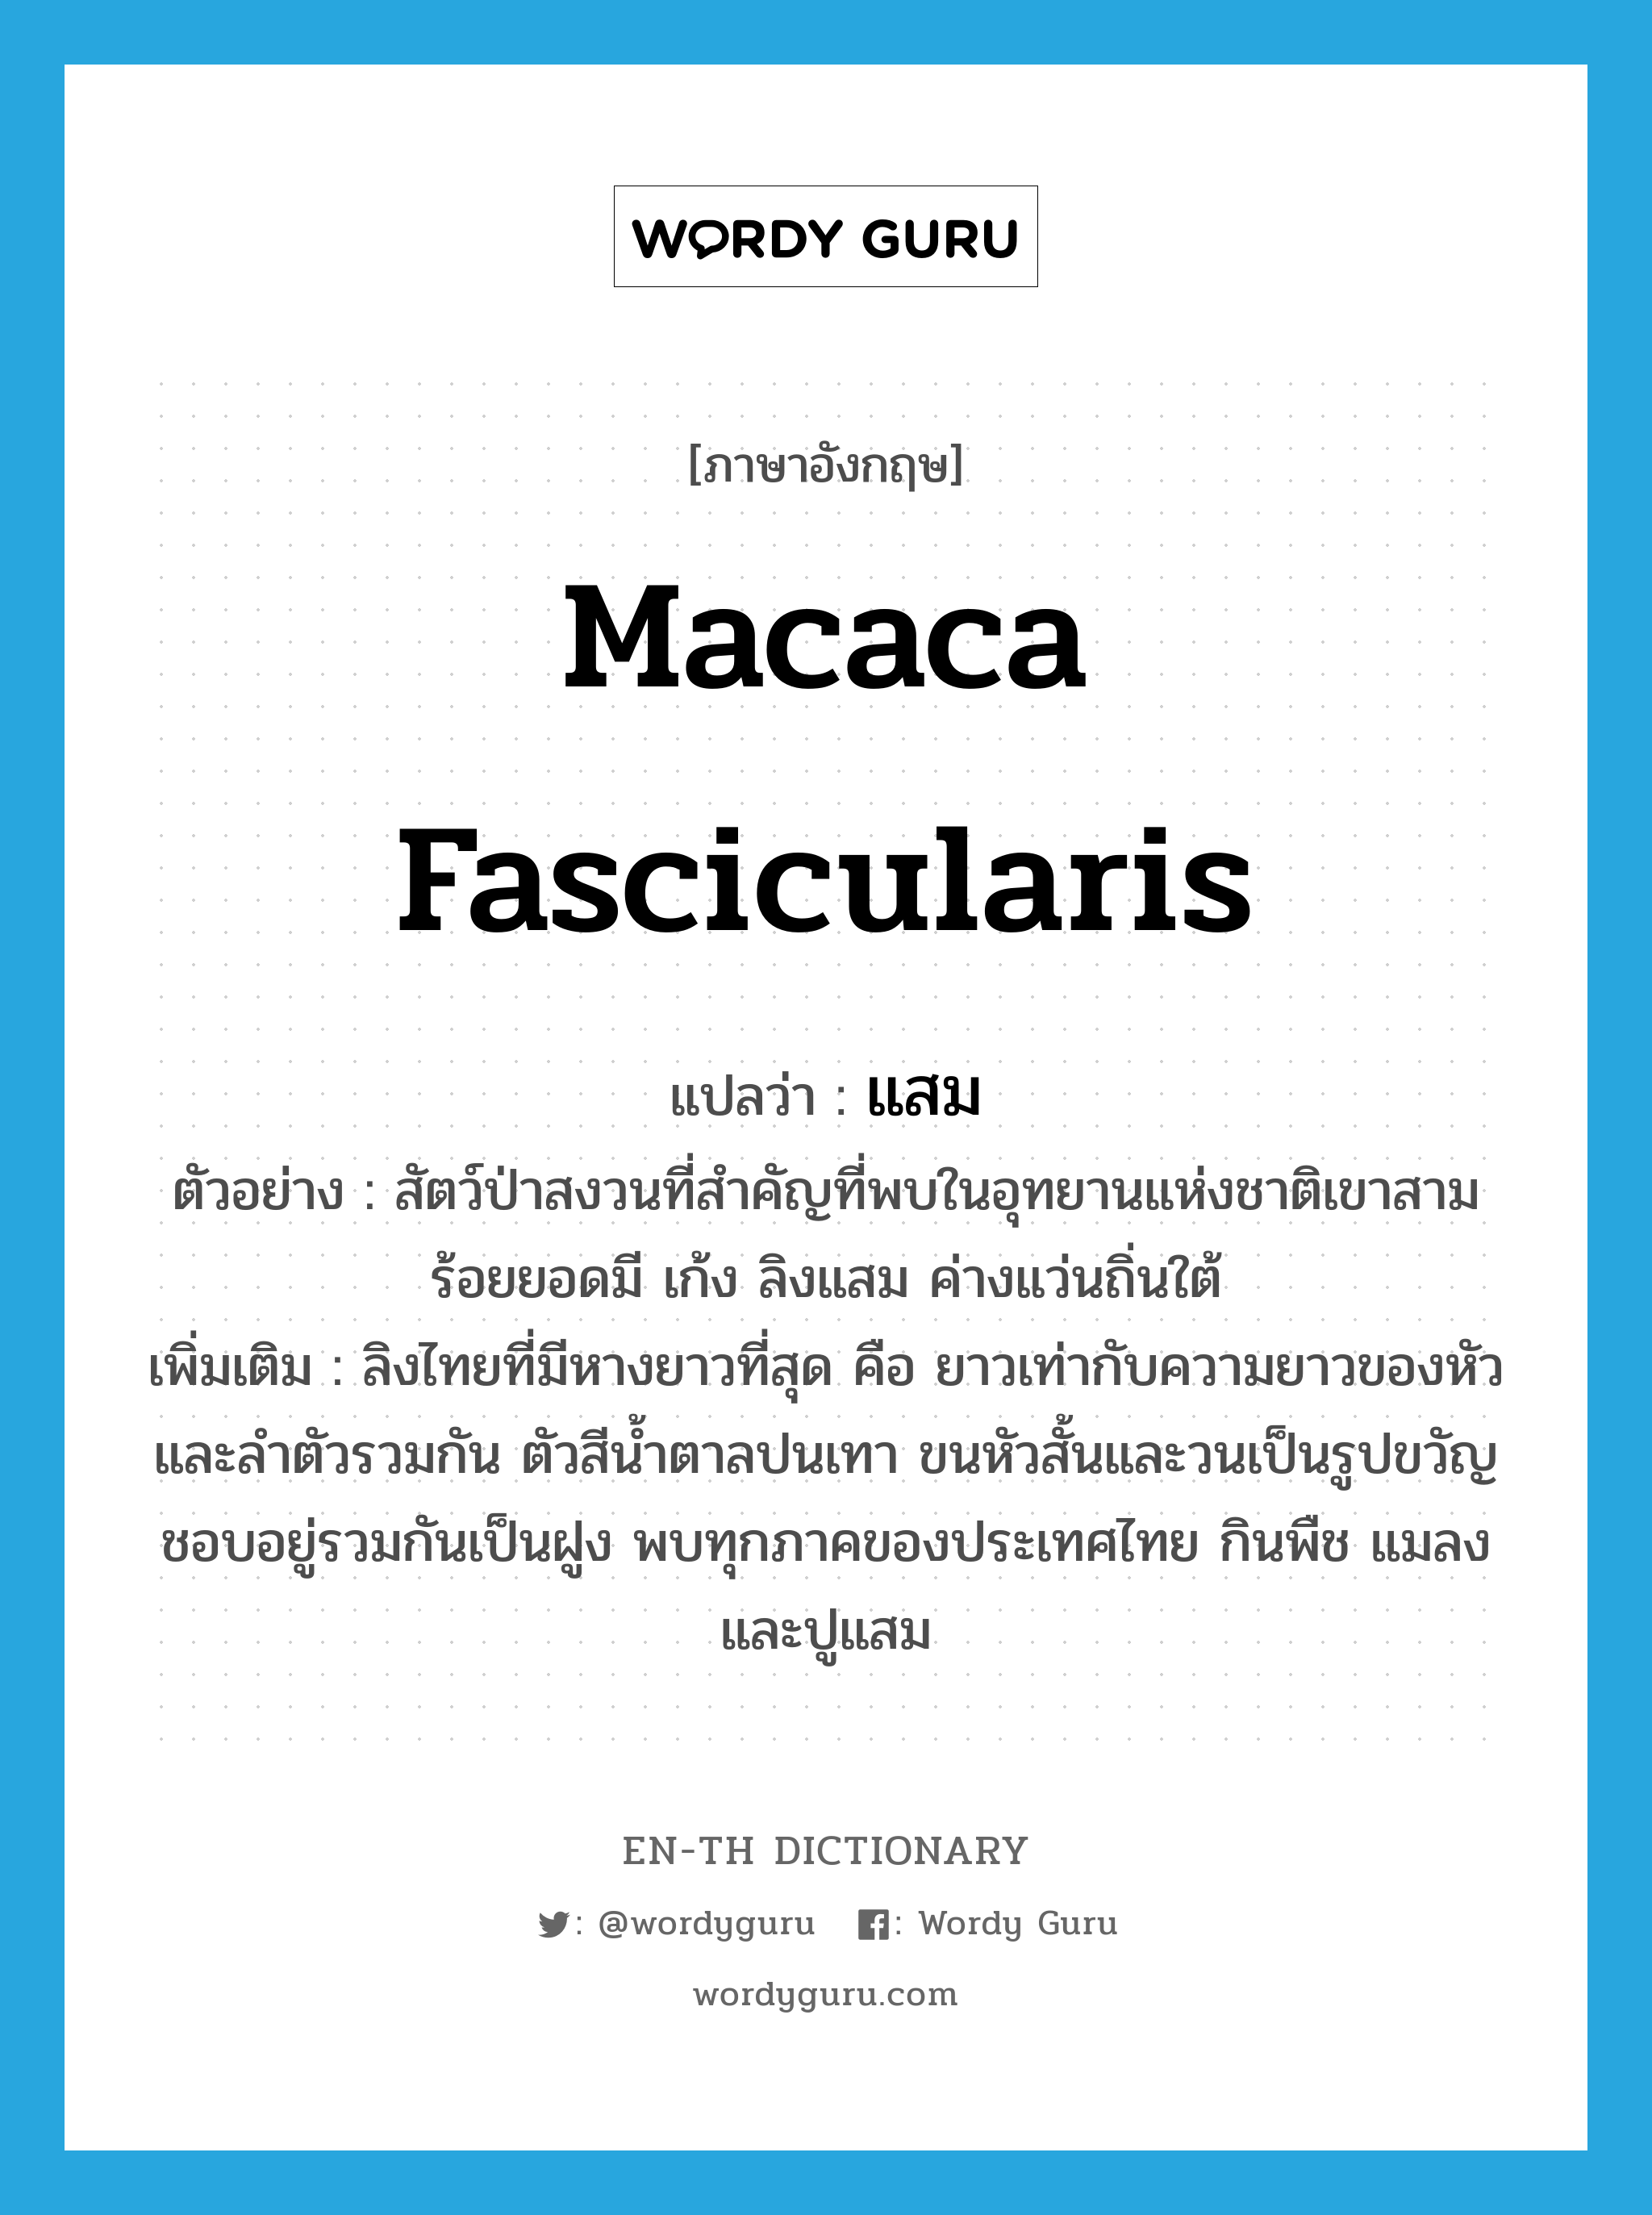 Macaca fascicularis แปลว่า?, คำศัพท์ภาษาอังกฤษ Macaca fascicularis แปลว่า แสม ประเภท N ตัวอย่าง สัตว์ป่าสงวนที่สำคัญที่พบในอุทยานแห่งชาติเขาสามร้อยยอดมี เก้ง ลิงแสม ค่างแว่นถิ่นใต้ เพิ่มเติม ลิงไทยที่มีหางยาวที่สุด คือ ยาวเท่ากับความยาวของหัวและลำตัวรวมกัน ตัวสีน้ำตาลปนเทา ขนหัวสั้นและวนเป็นรูปขวัญ ชอบอยู่รวมกันเป็นฝูง พบทุกภาคของประเทศไทย กินพืช แมลง และปูแสม หมวด N